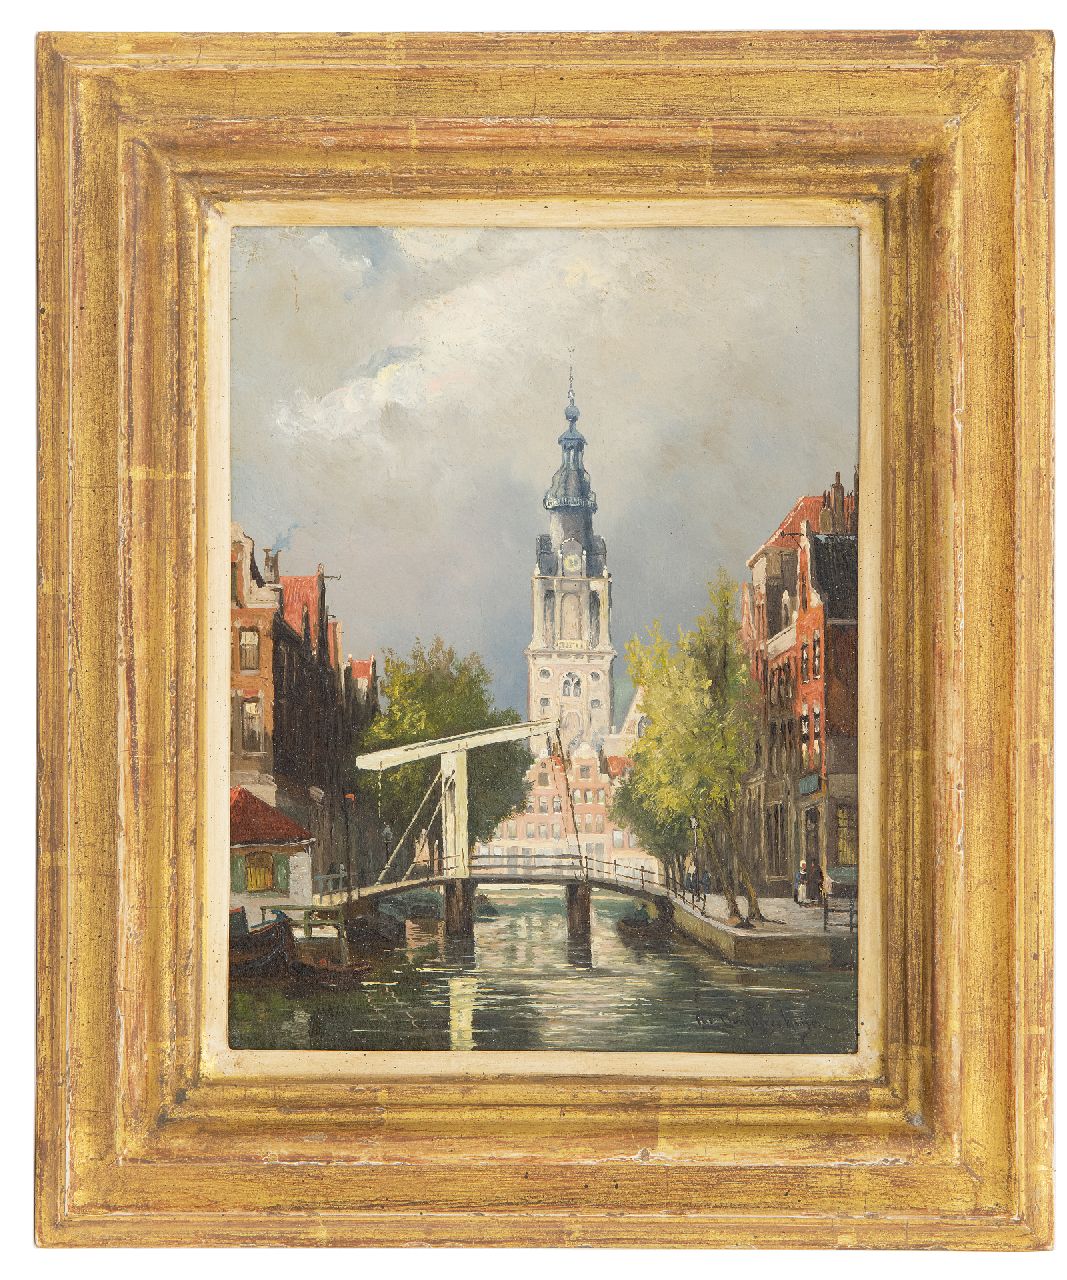 Dommelshuizen C.C.  | Cornelis Christiaan Dommelshuizen | Schilderijen te koop aangeboden | Amsterdams stadsgezicht met de Zuiderkerkstoren, olieverf op paneel 22,8 x 17,7 cm, gesigneerd rechtsonder